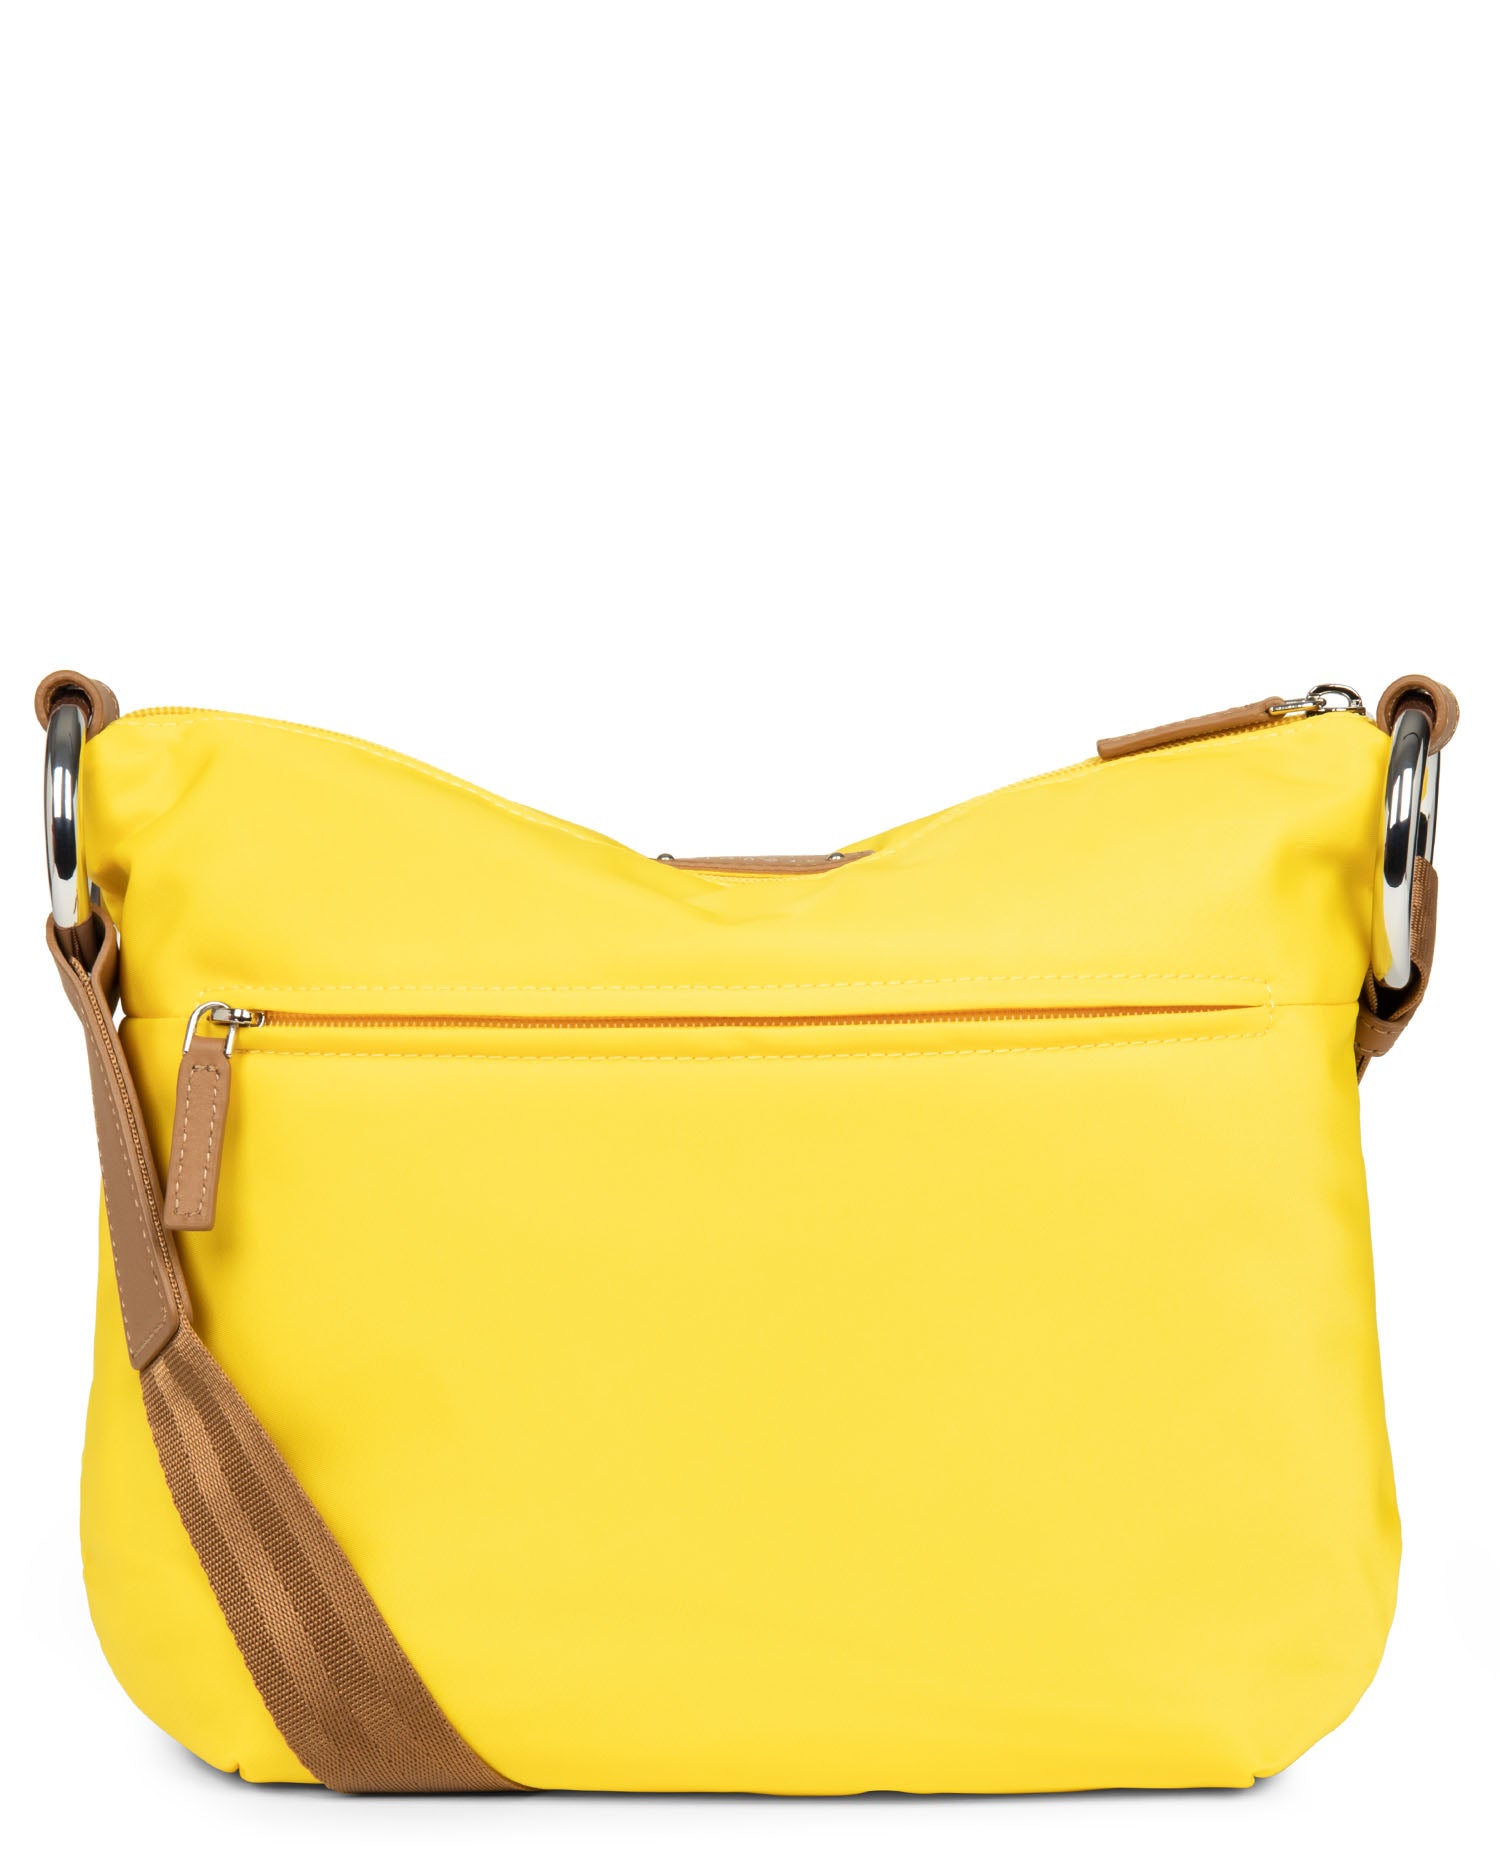 handle base #couleur_jaune